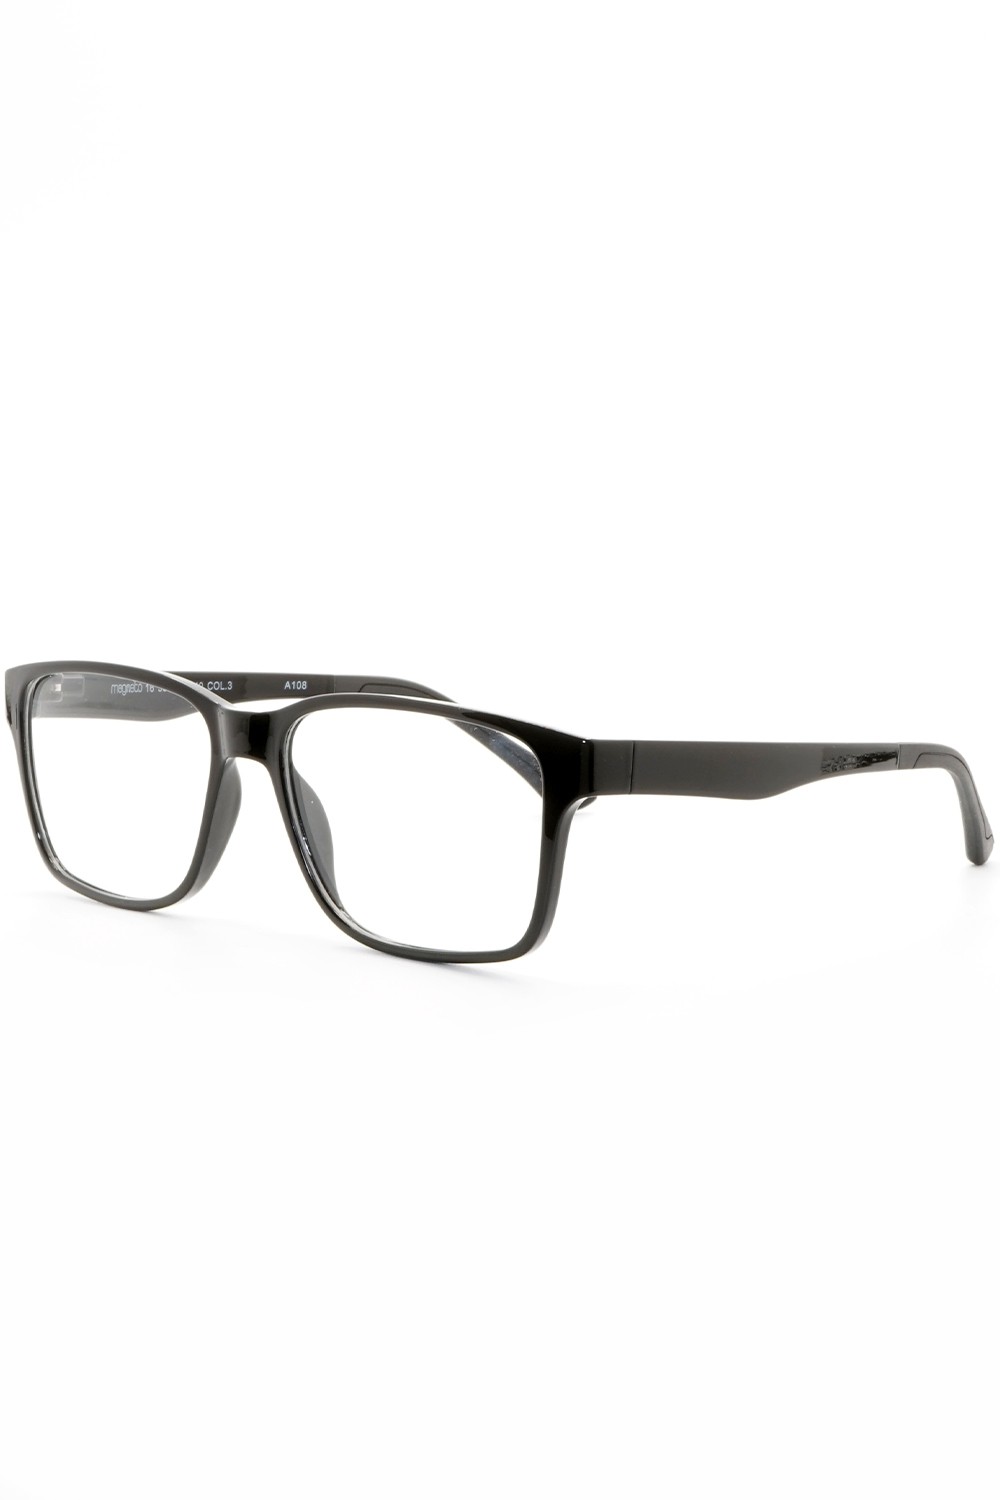 TF Occhiali - Occhiali da vista in plastica con clip solare rettangolari unisex